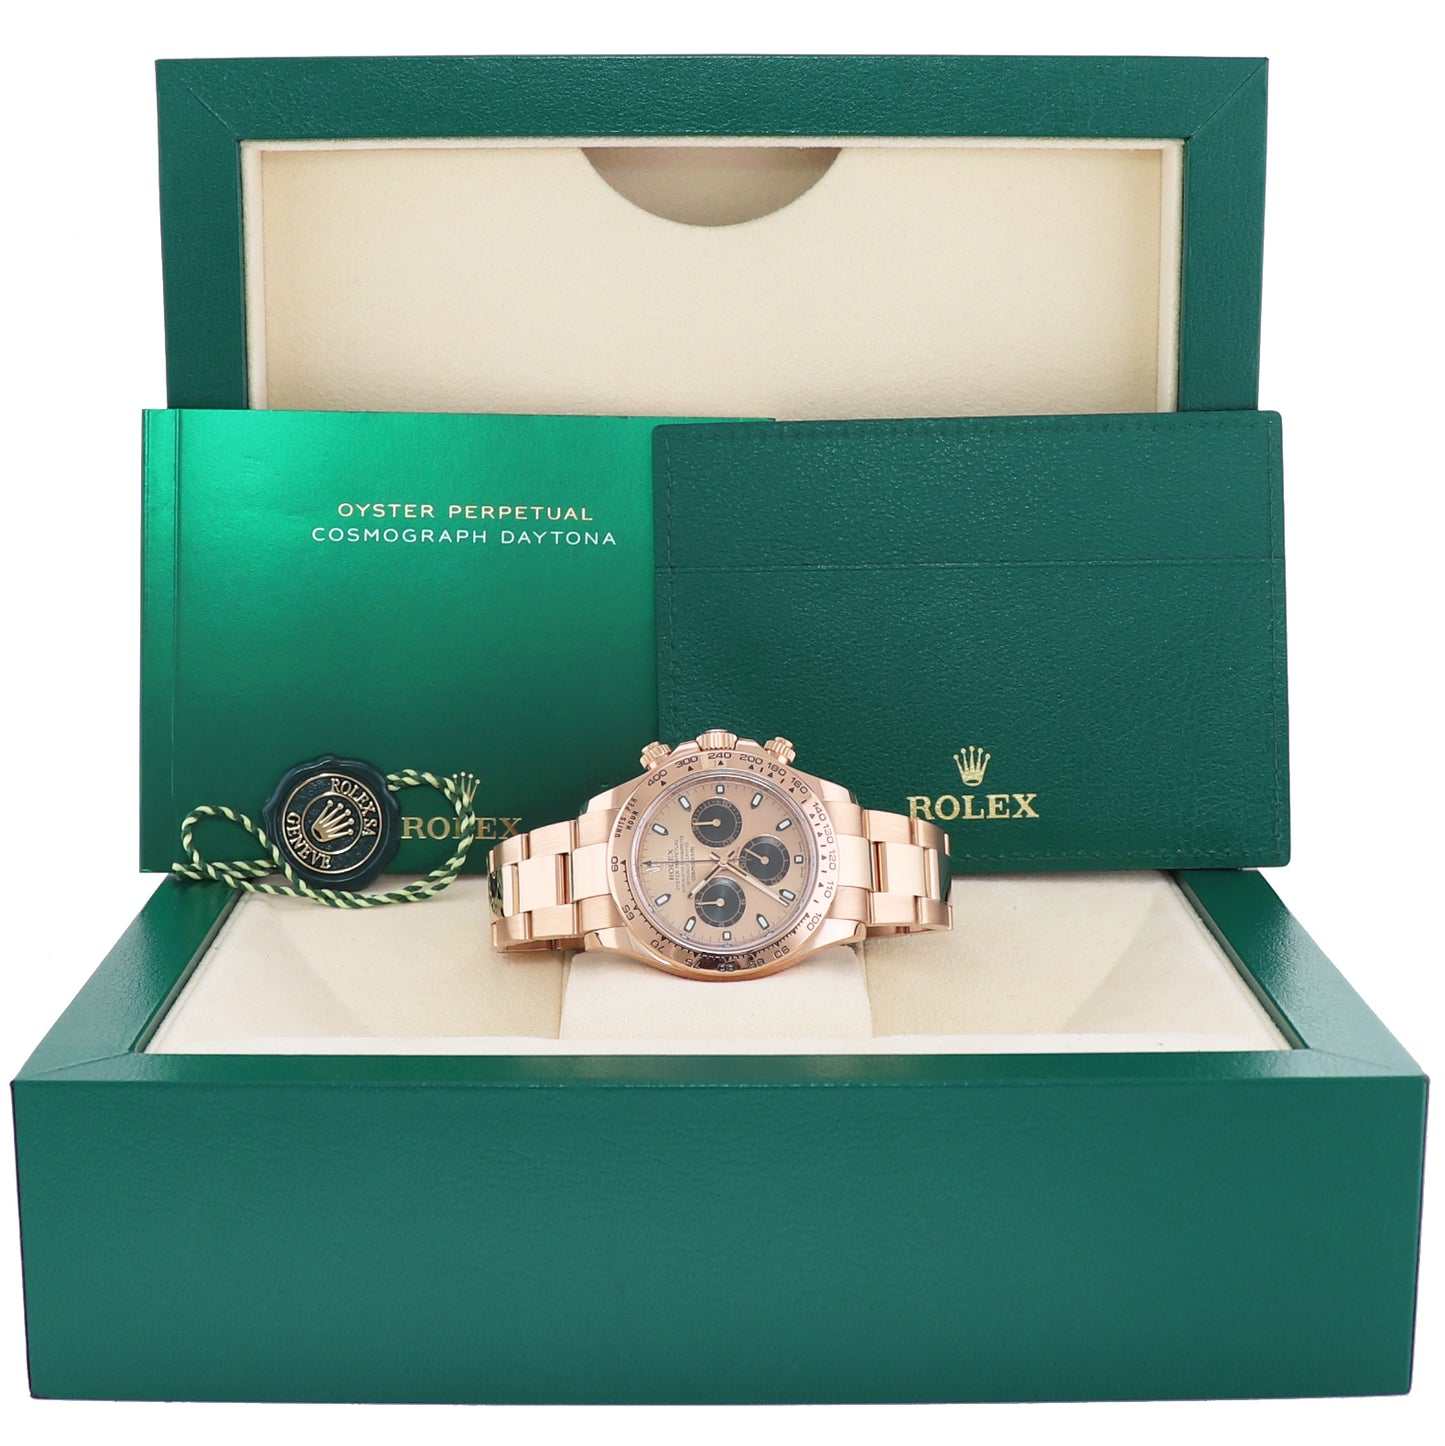 MINT Rolex Daytona Cosmograph Rose Gold Sundust Panda 116505 Chrono Watch Box